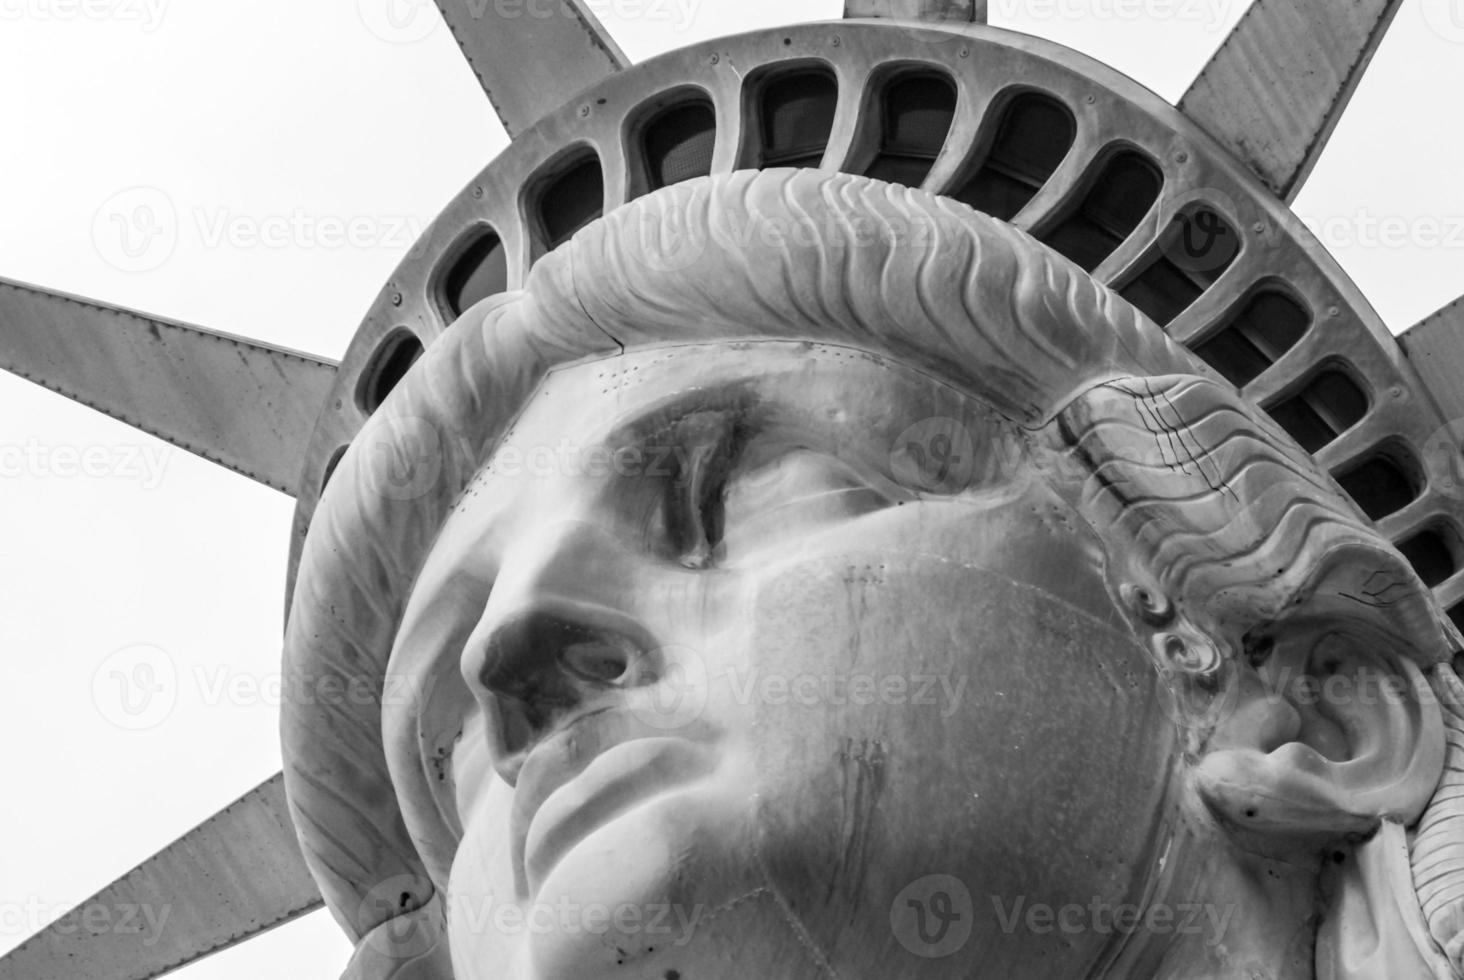 estatua de la libertad en la ciudad de nueva york. foto